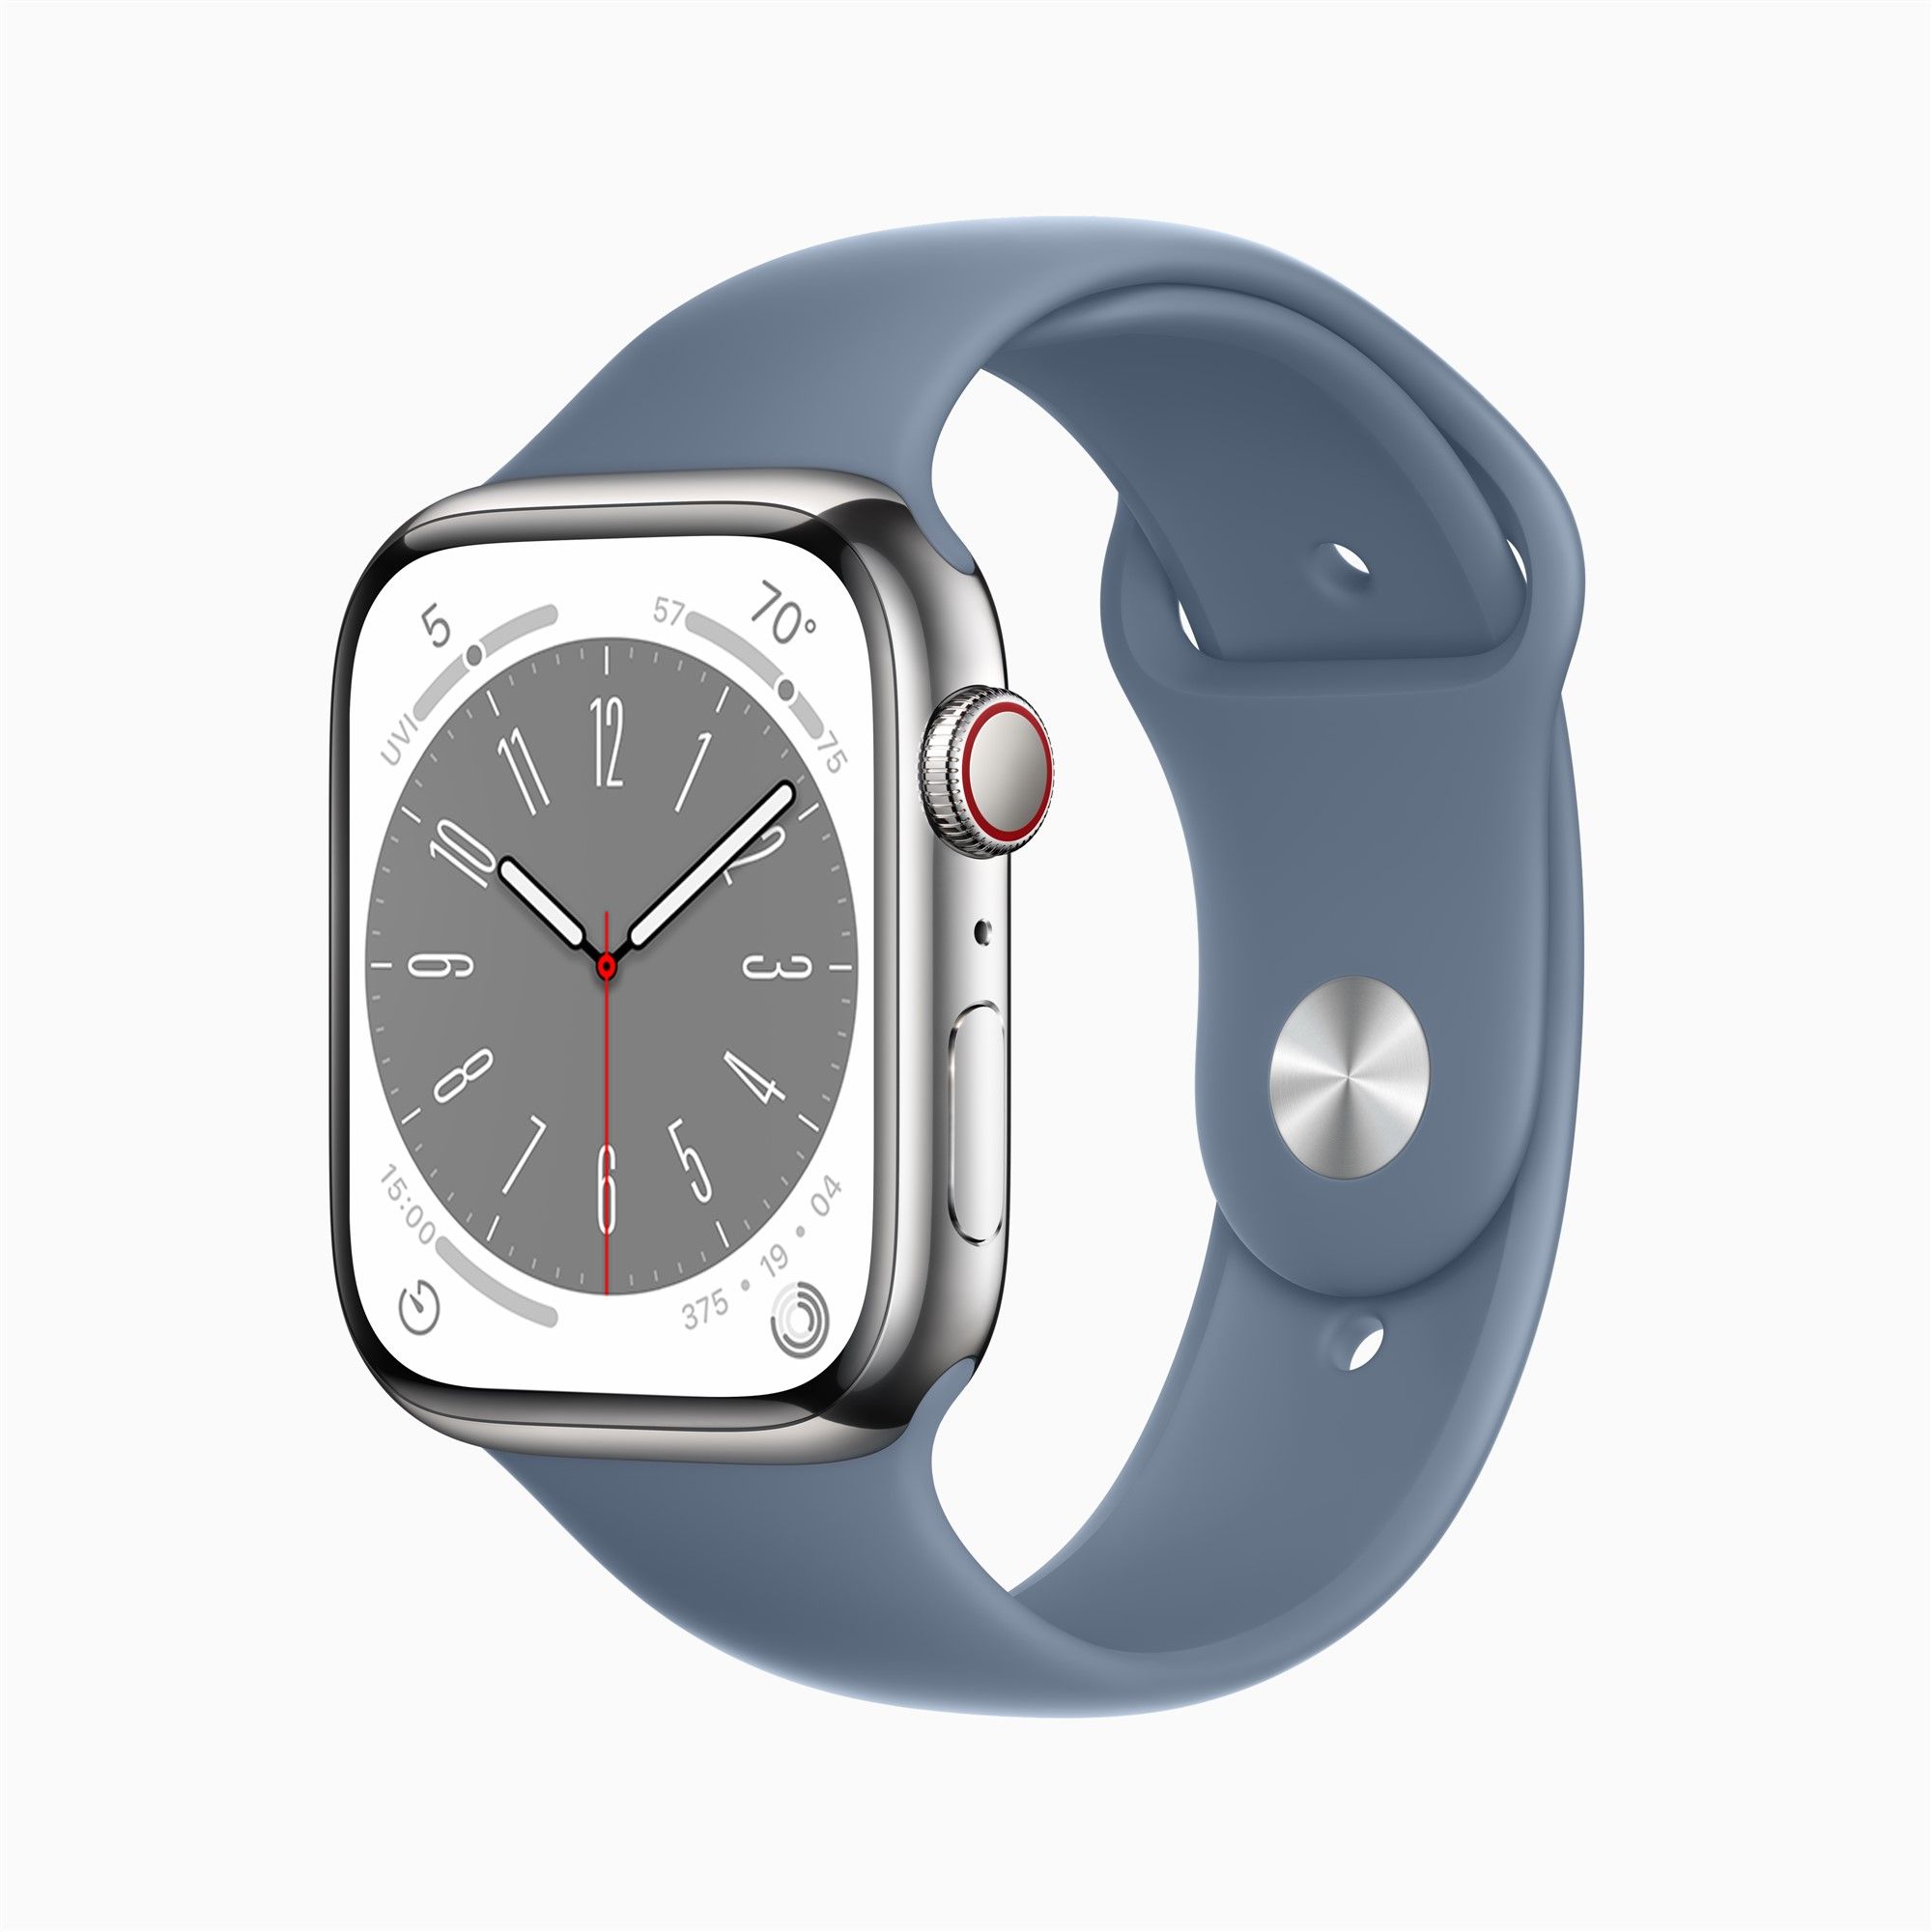 Apple Watch erscheint in Ultra-Version, Airpods Pro in 2. Generation